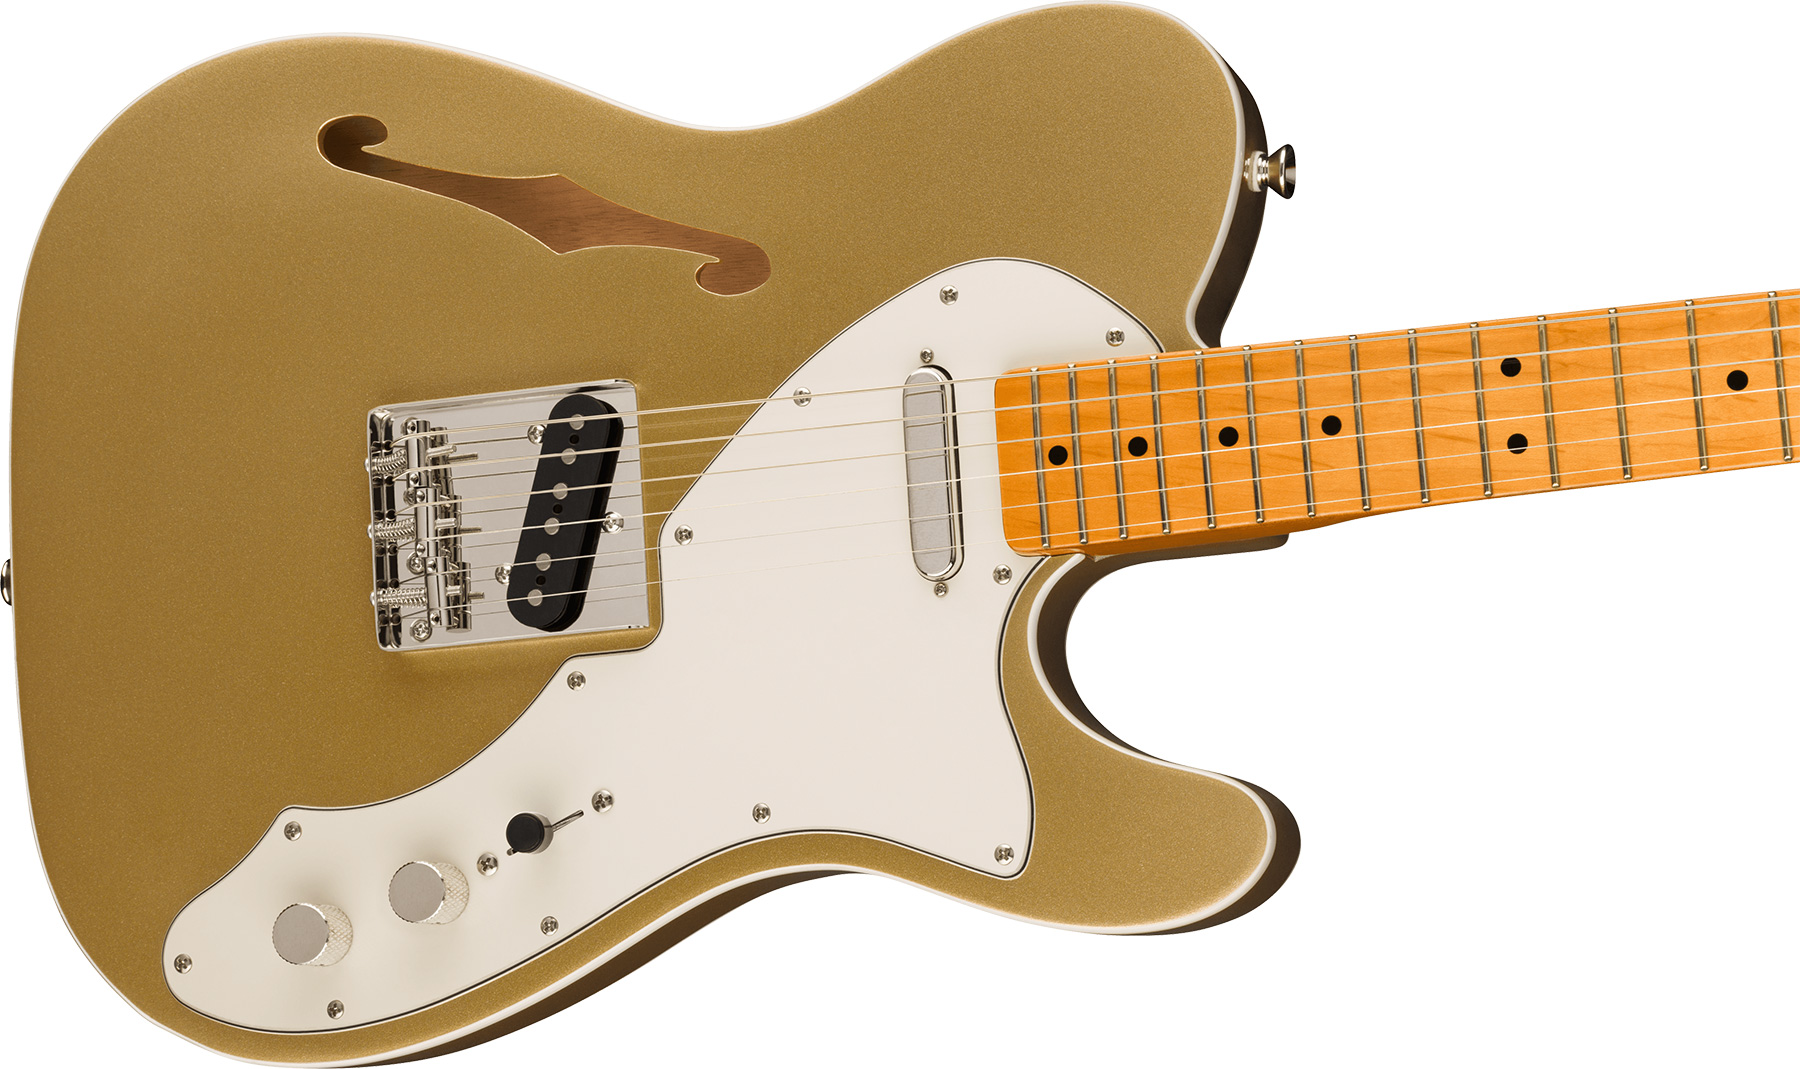 Squier Tele '60s Thinline Parchment Pickguard Classic Vibe Fsr 2s Ht Mn - Aztec Gold - Televorm elektrische gitaar - Variation 2